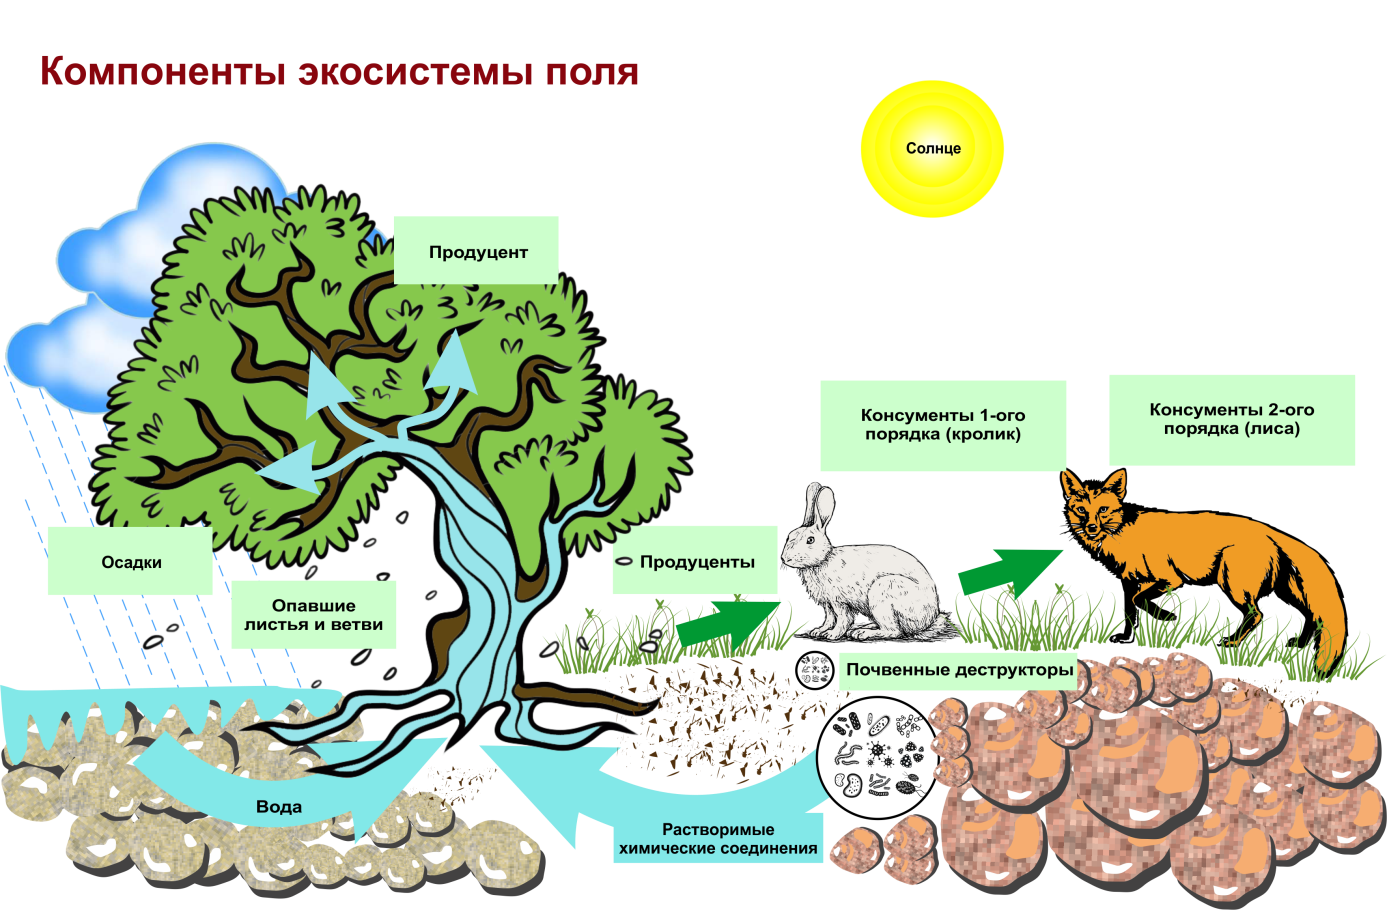 Роль лисы в биологическом круговороте. Структура биогеоценоза и экосистемы. Схема трофической структуры биоценоза широколиственного леса. Строение биогеоценоза экосистемы. Схема состава компонентов экосистемы.